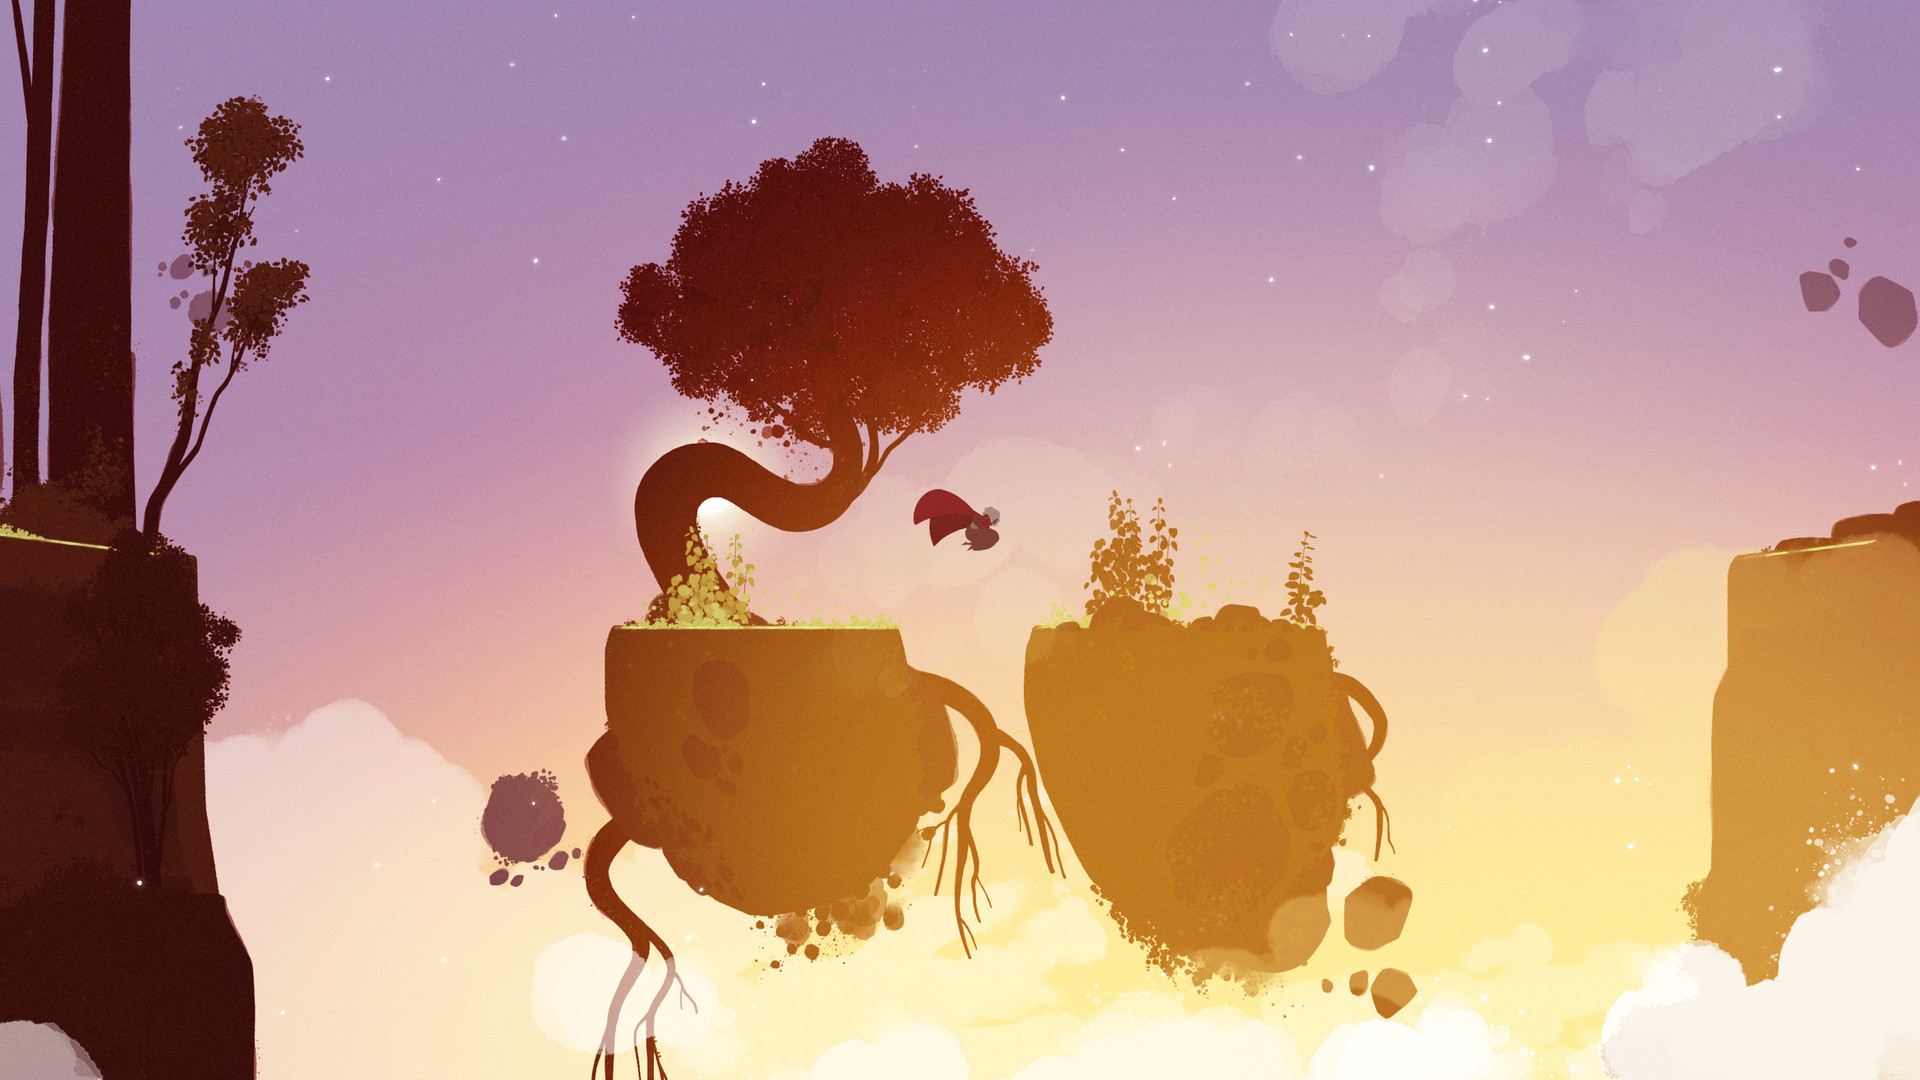 Прекрасное изображение из игры Neva, на котором персонаж прыгает с плавающего камня на камень, с розовым, фиолетовым и желтым оттенками неба.